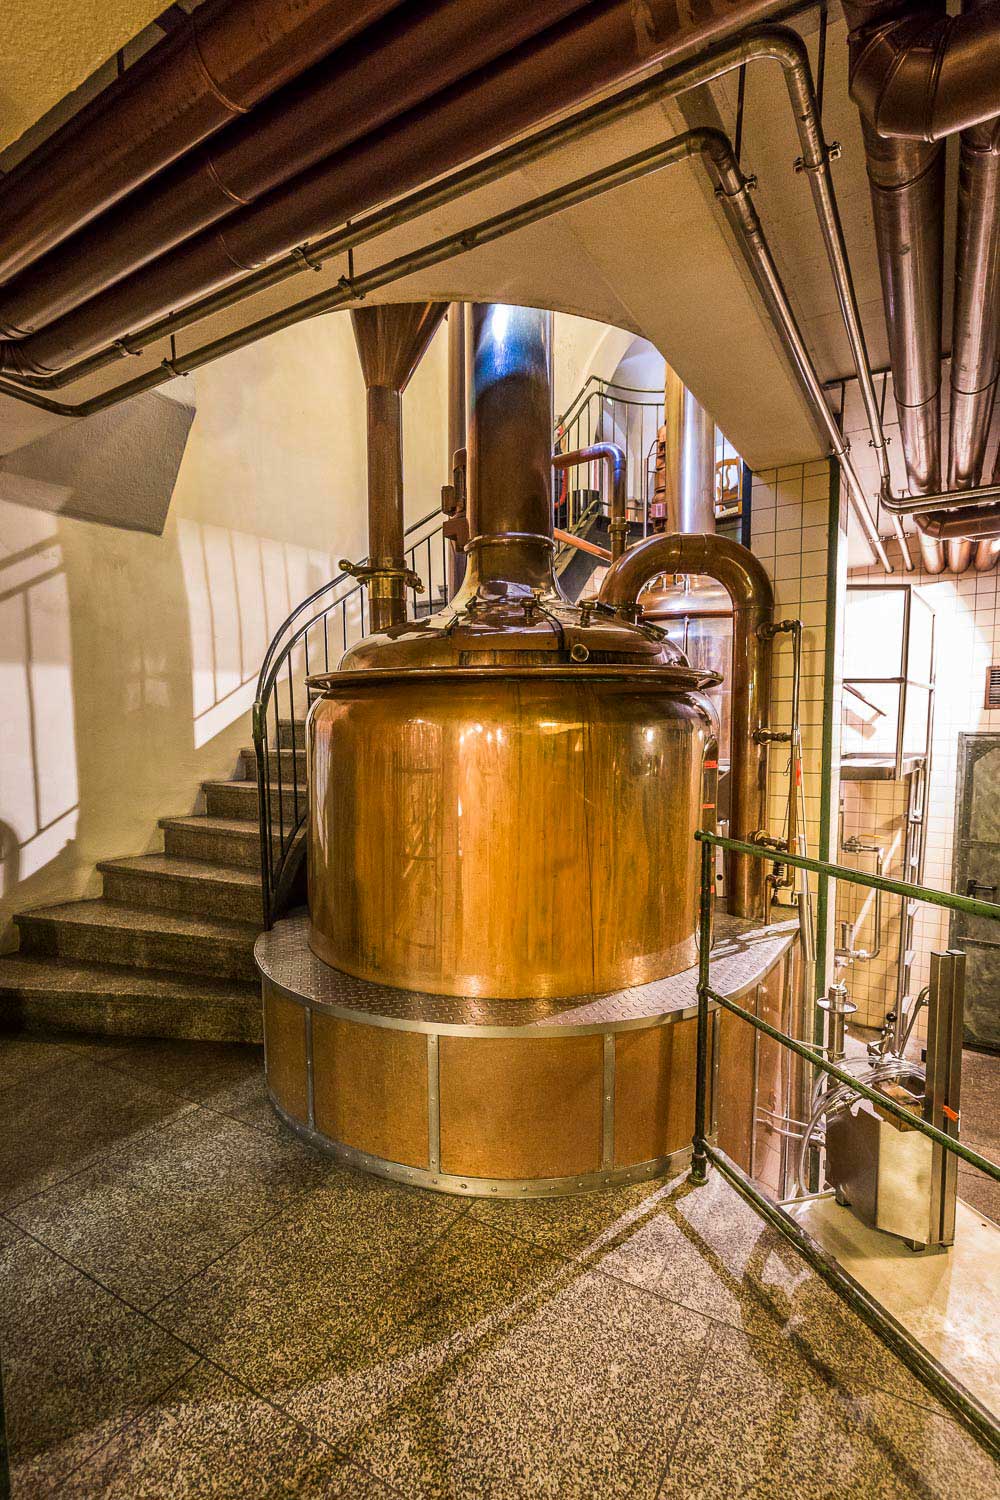 Die Betreiberfamilie Winkler hat aus dem historischen, denkmalgeschützten Haus im Herzen der Stadt Weiden eine außergewöhnliche Brauereigaststätte geschaffen.